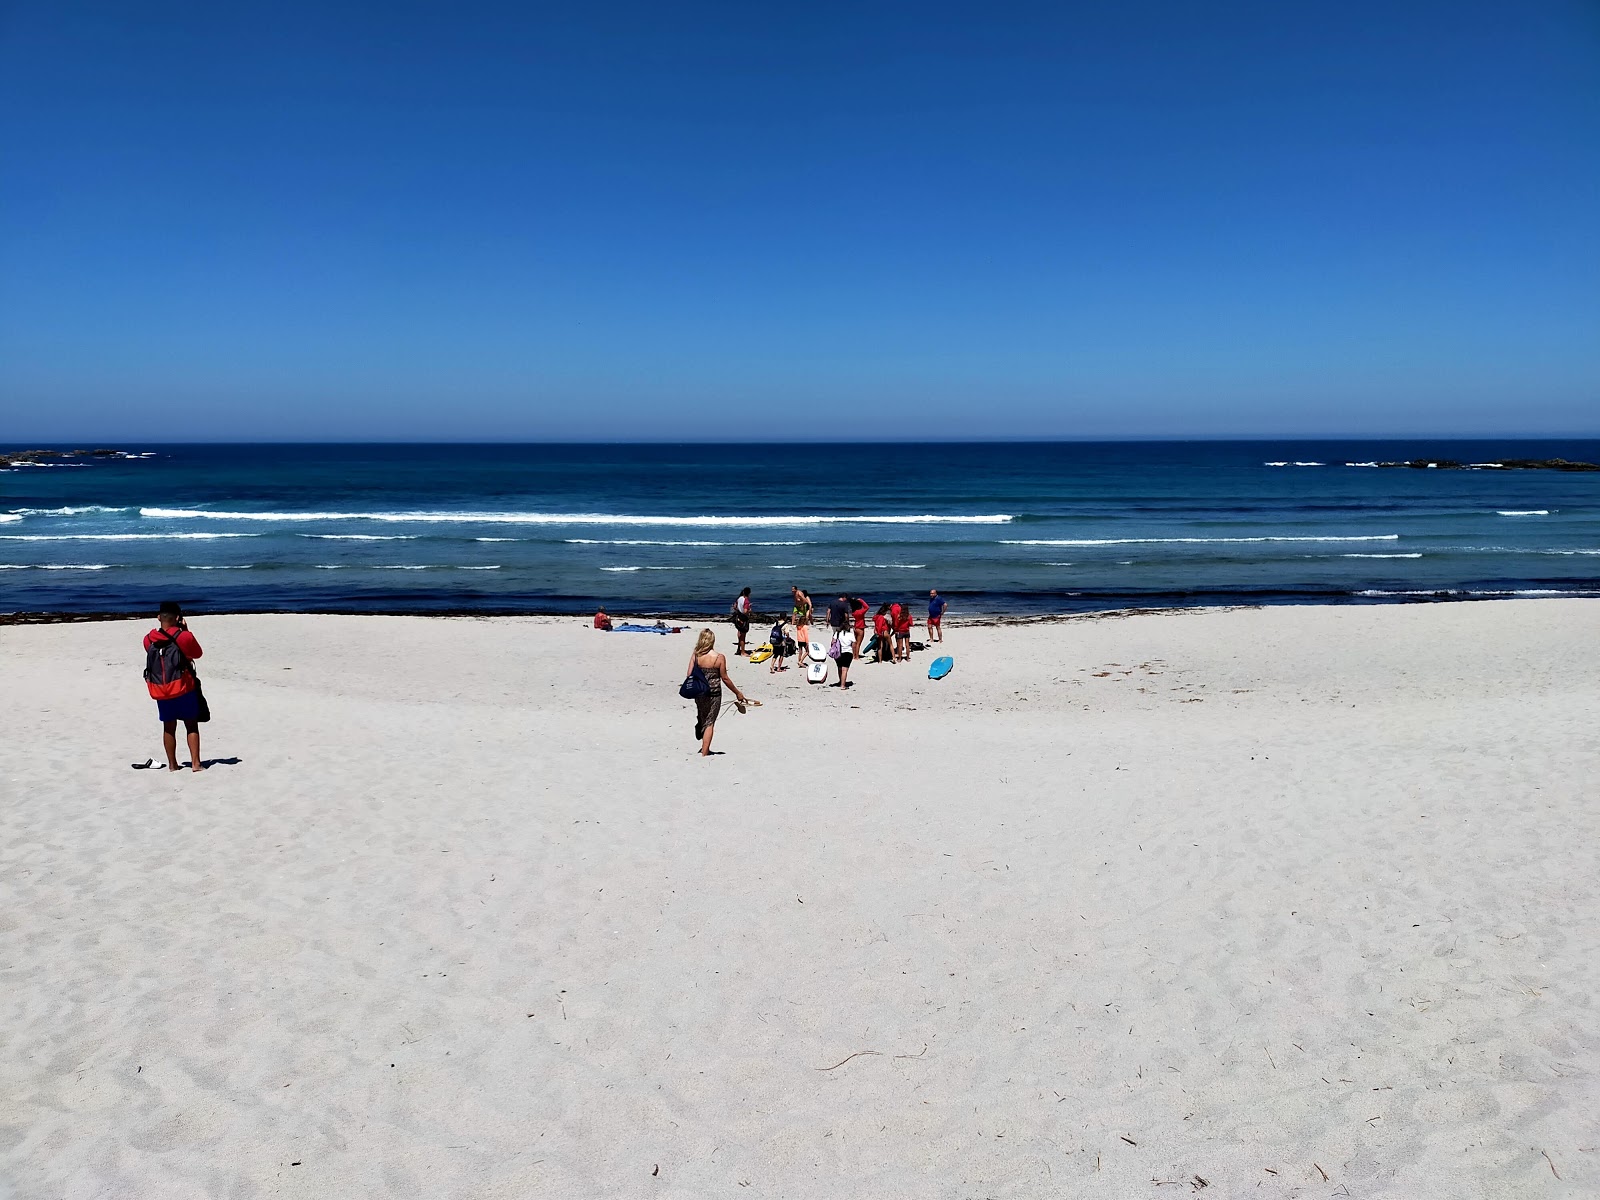 Praia de Soesto的照片 带有蓝色纯水表面